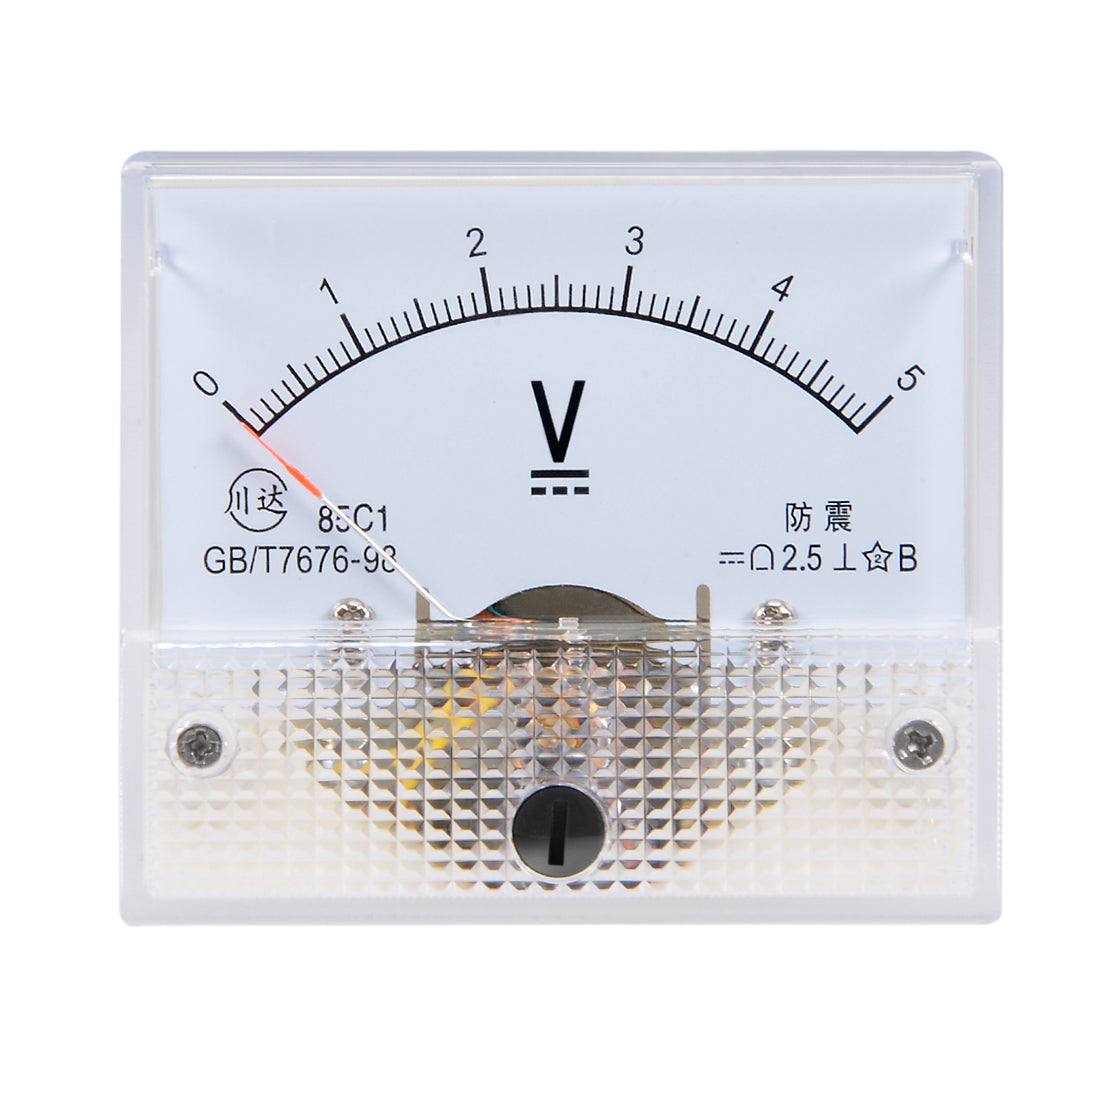 uxcell Uxcell DC 0-5V Analog Panel Voltage Gauge Volt Meter 85C1 2.5% Error